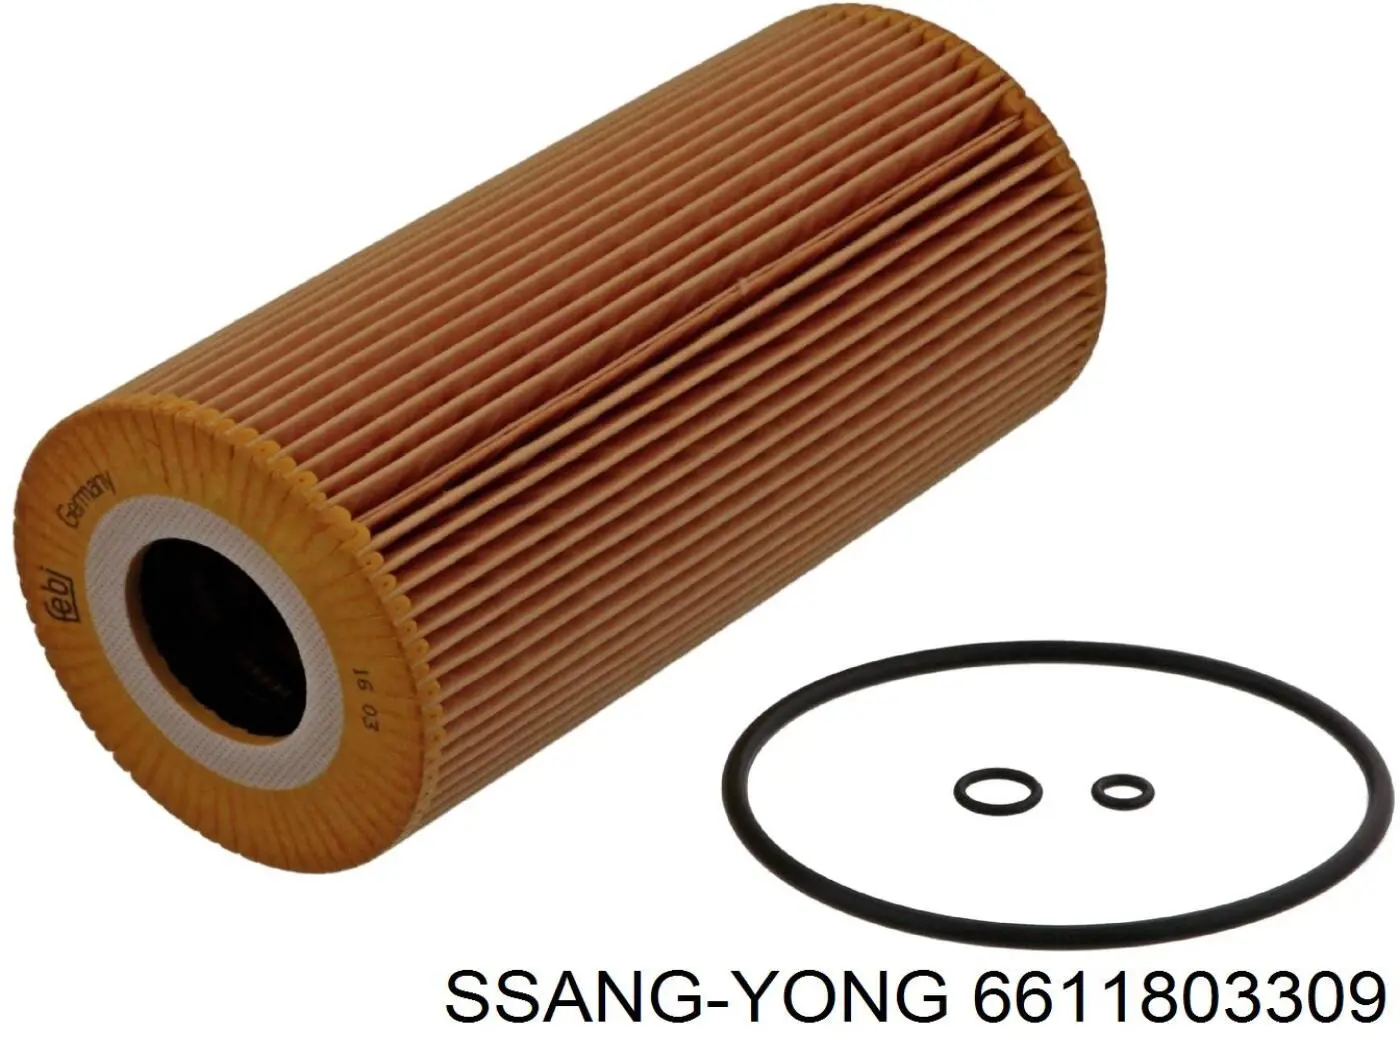 6611803309 Ssang Yong filtro de aceite